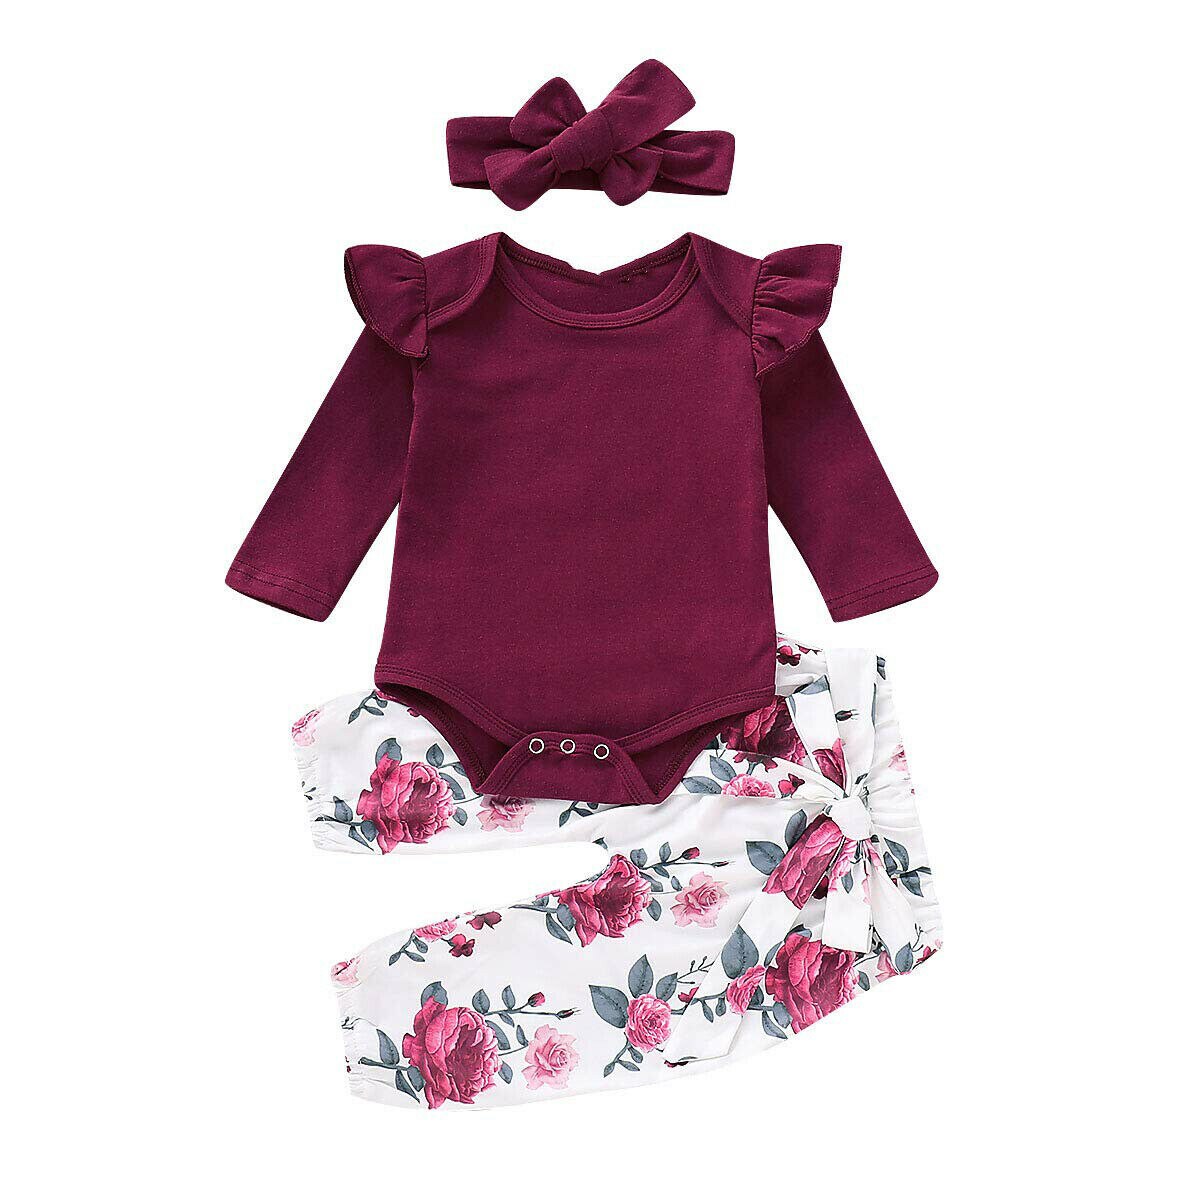 Toddler kids baby floral 3 pcs flæser tøj sport jumpsuit romper bukser pandebånd outfit sæt: 6-9 måneder / Rød